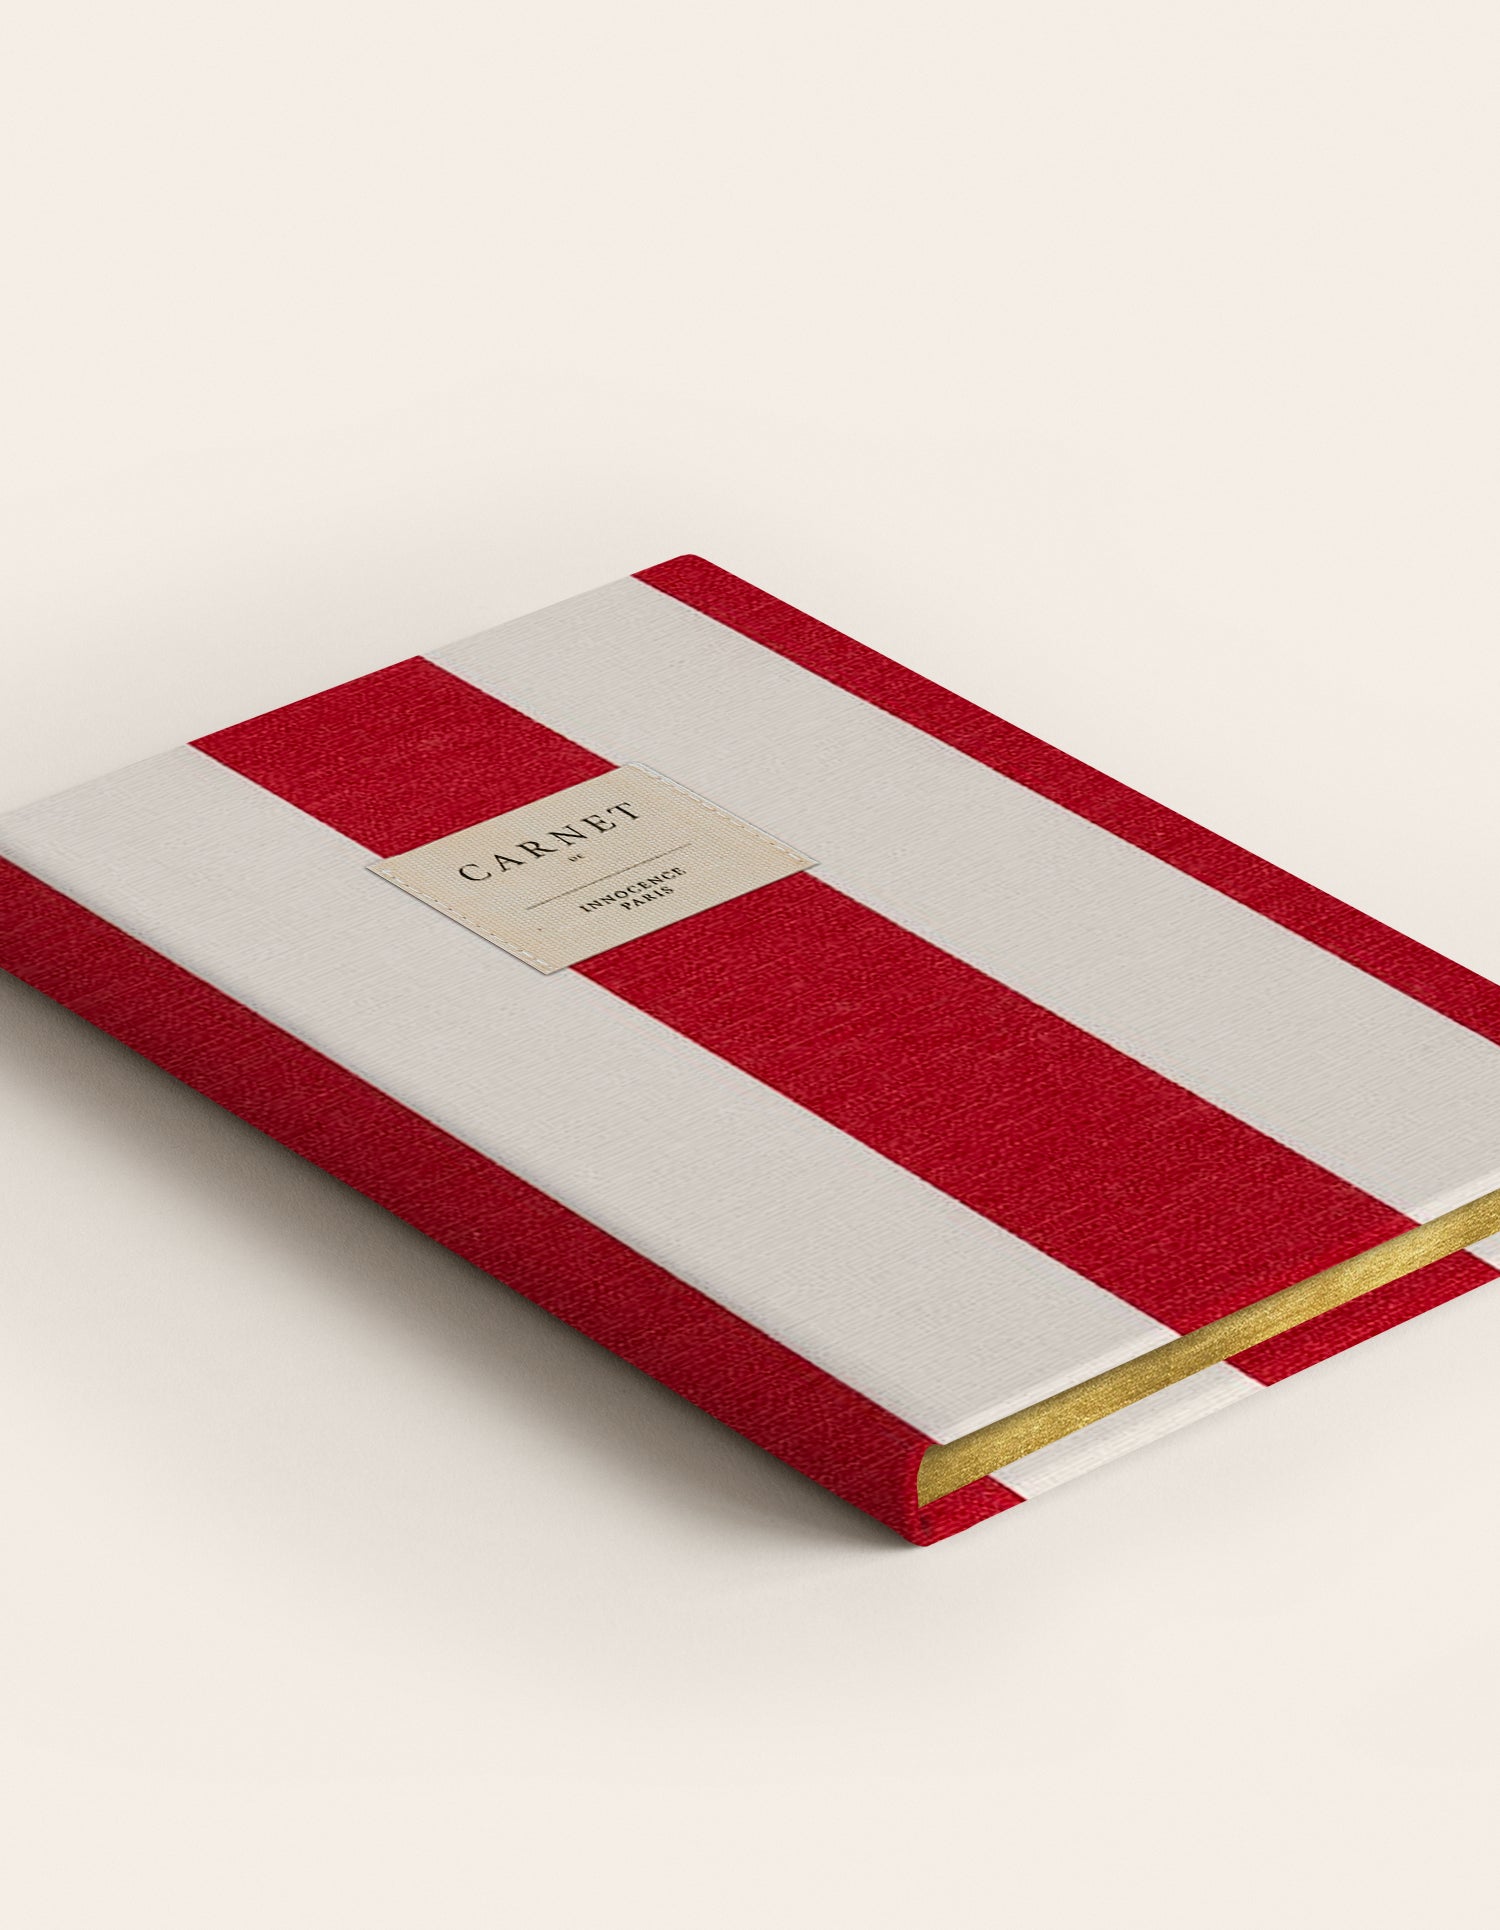 Red Sun notebook